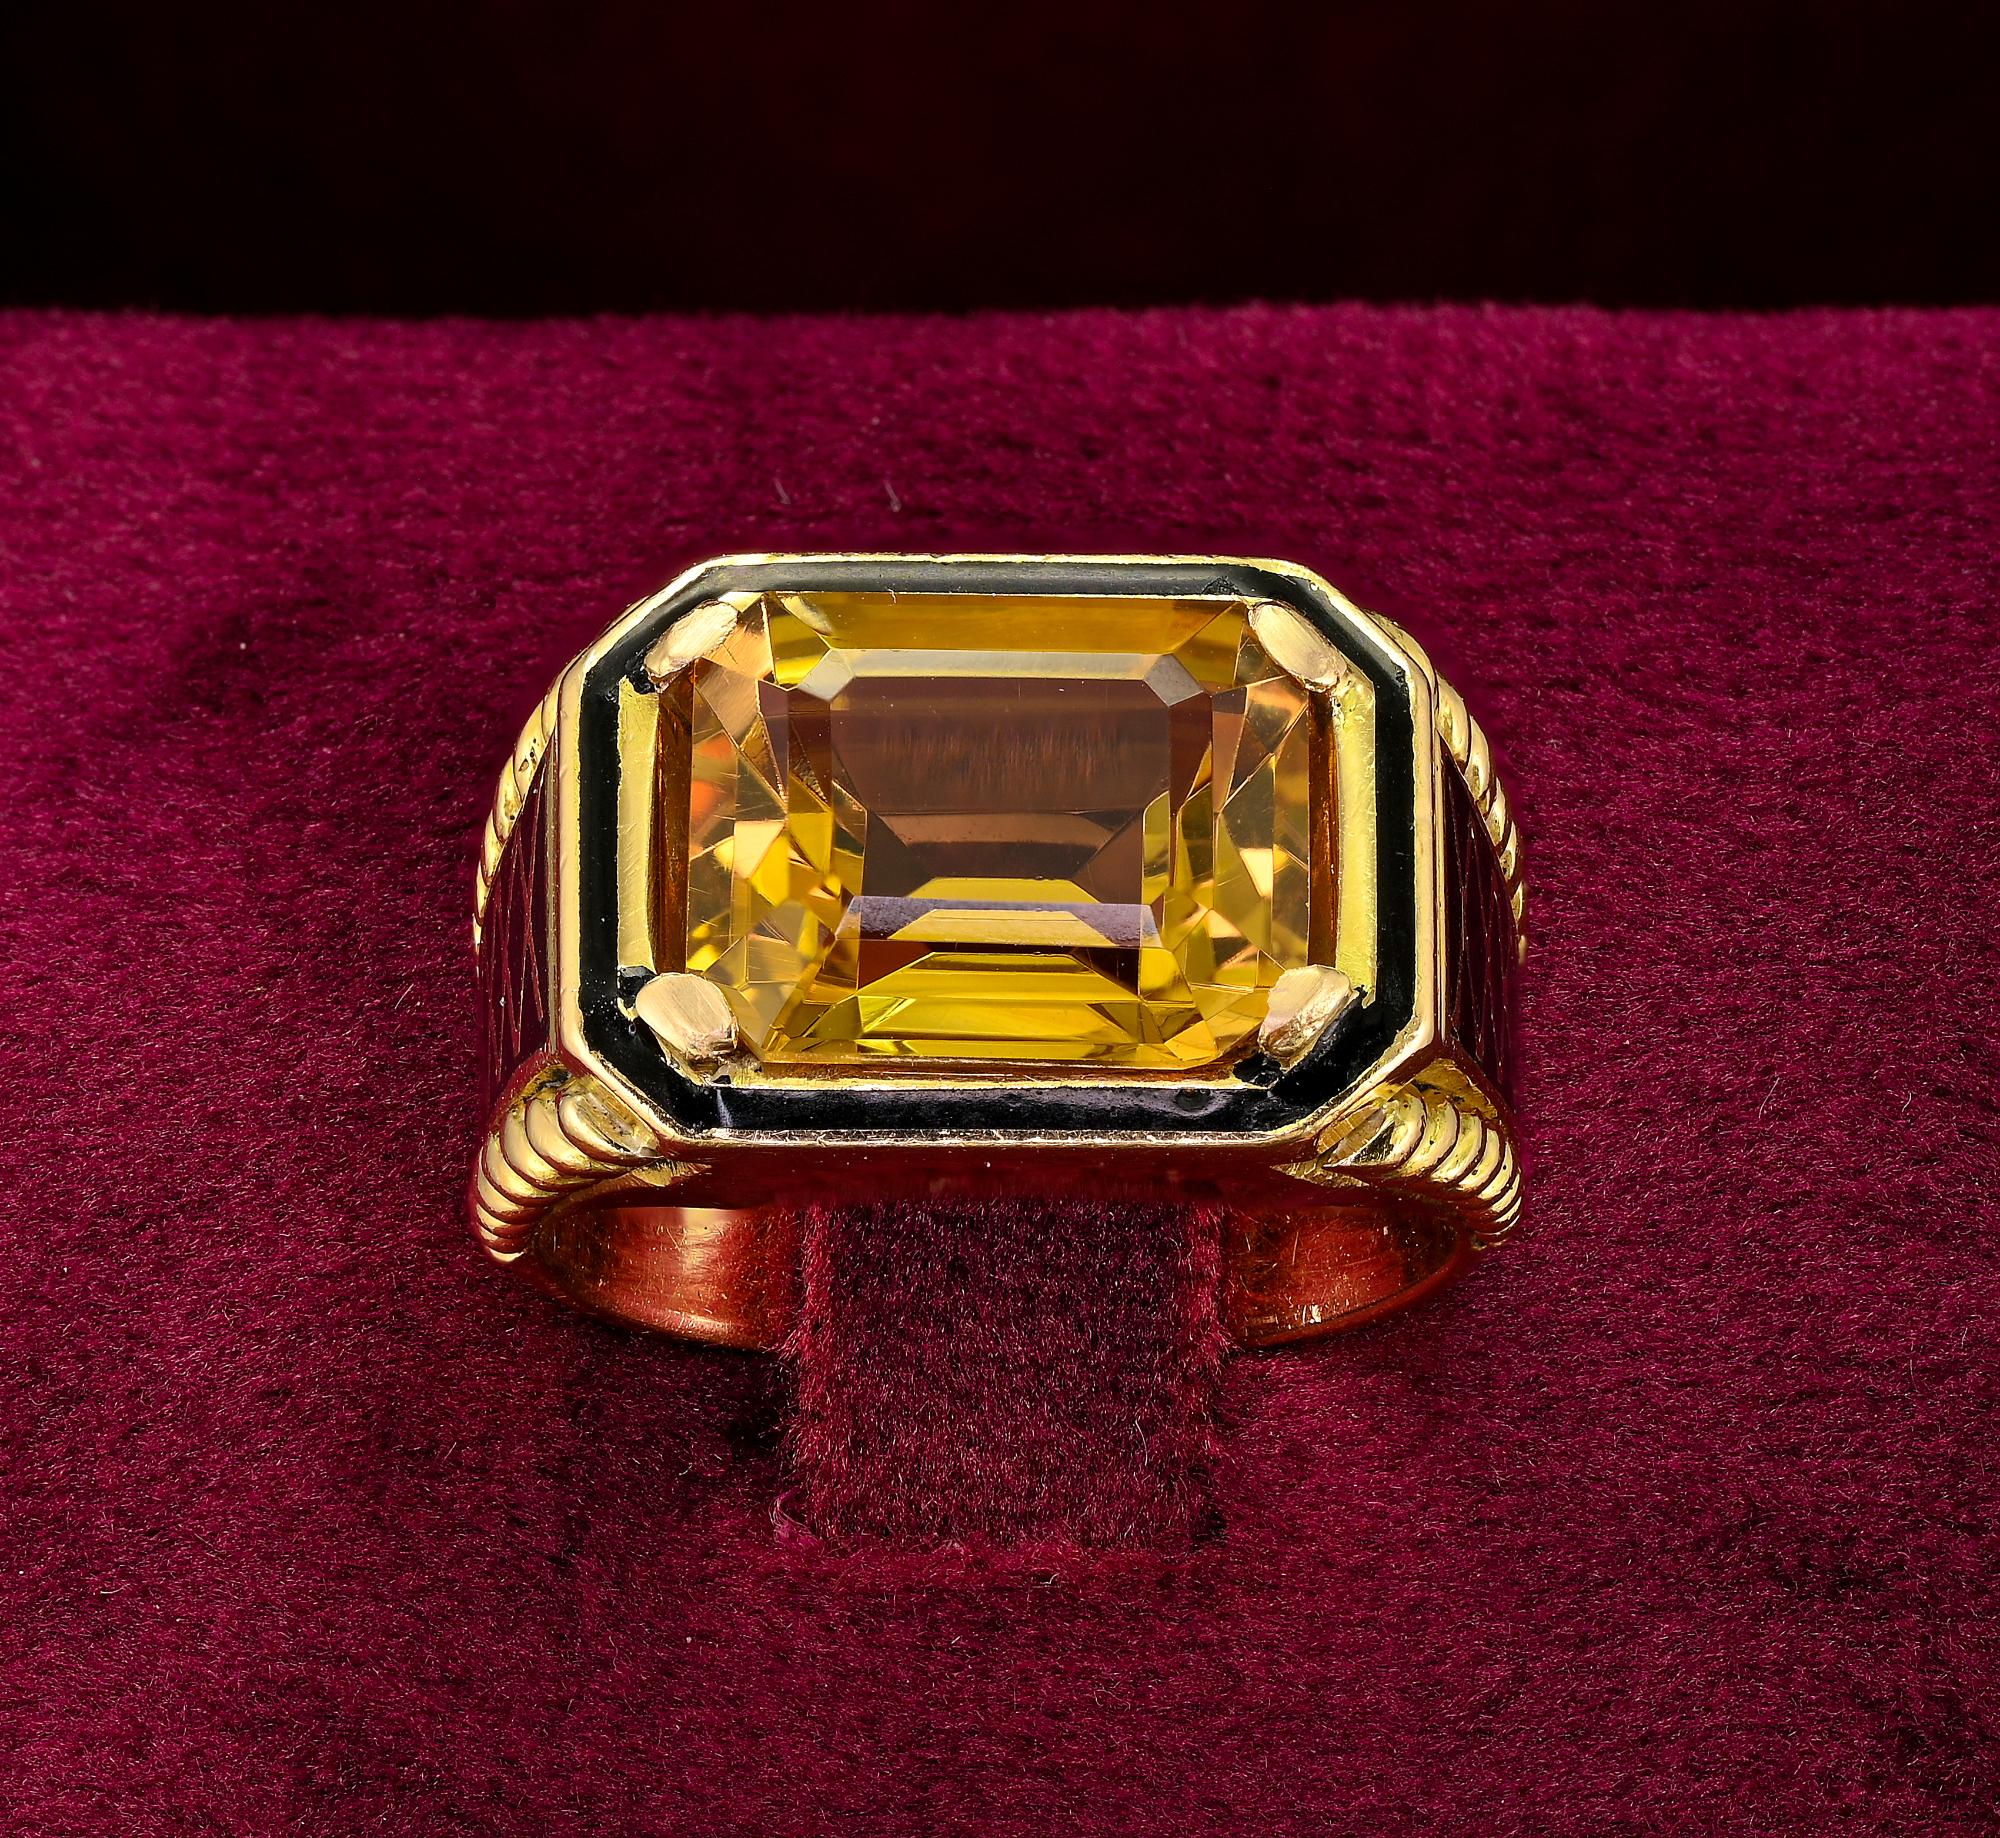 Wunderschöner italienischer Retro-Ring um 1940
Individuell handgefertigt als Unikat aus massivem 18 KT, 13,9 Gramm schwer
Faszinierendes, einzigartiges Design in Form eines horizontalen, achteckigen Kopfes mit schwarzer Emaillierung, die den schönen